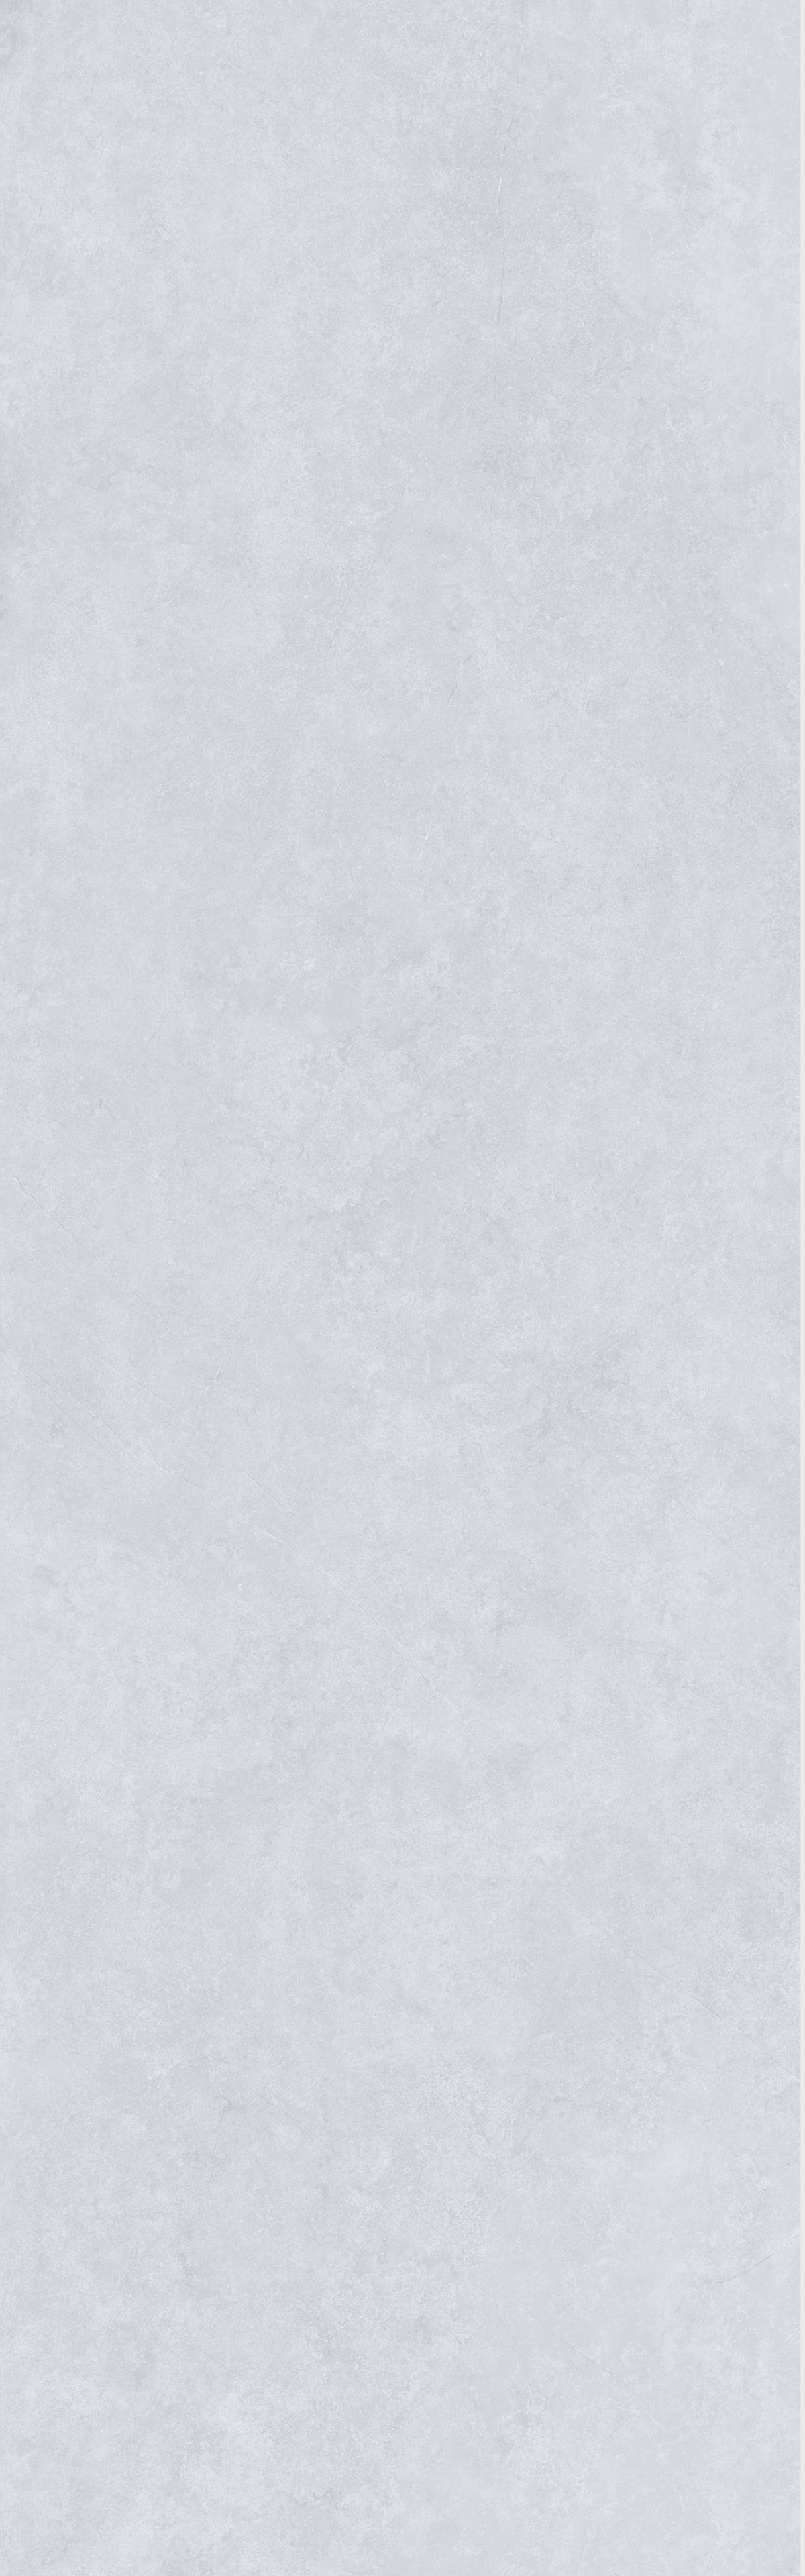 帕丽丝白灰 M8269W63LG产品图